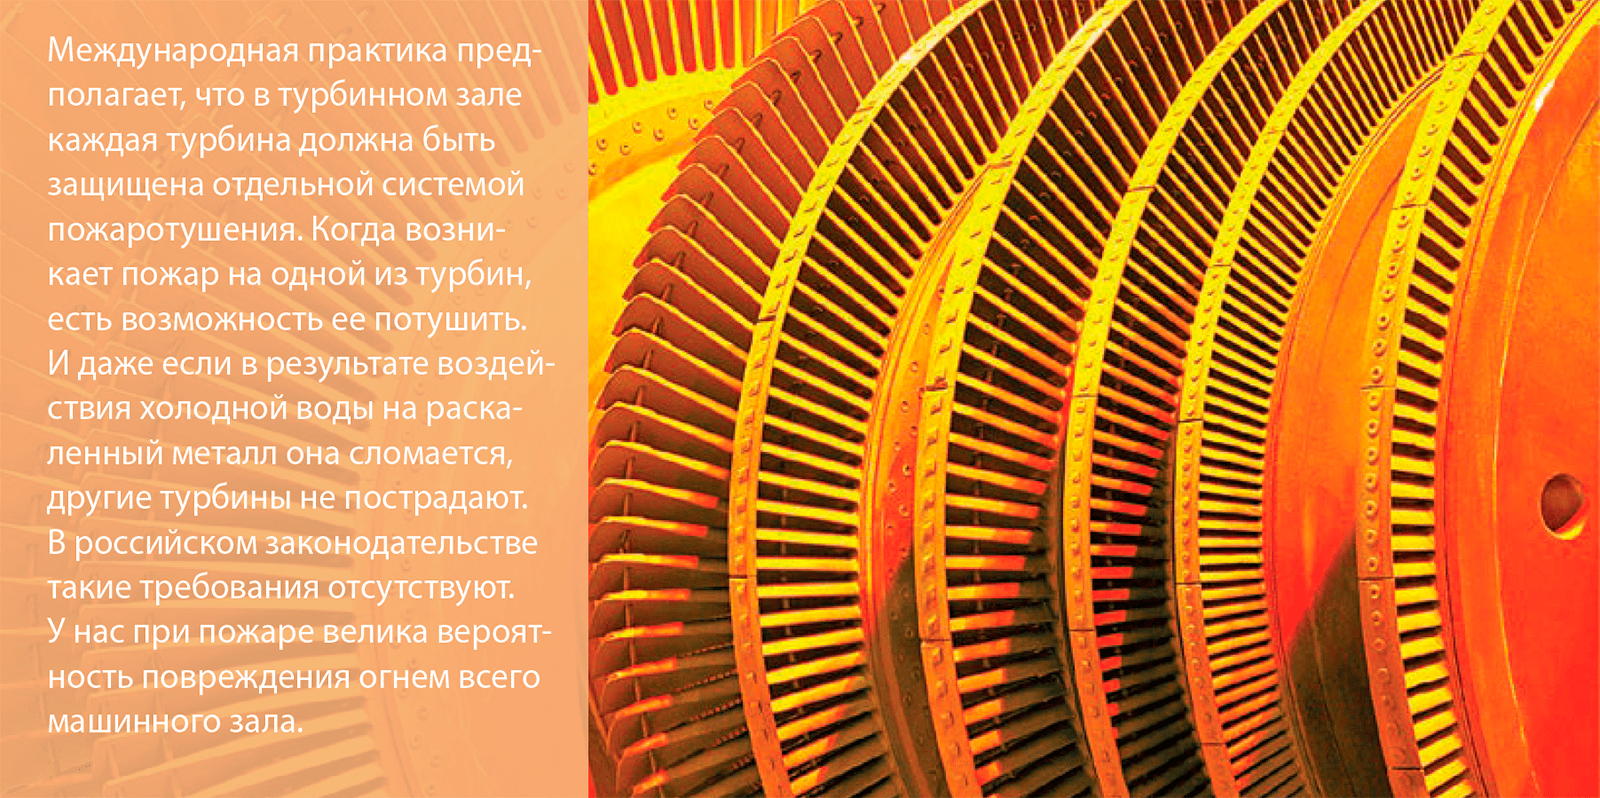 Международная практика пред- полагает, что в турбинном зале каждая турбина должна быть защищена отдельной системой пожаротушения.